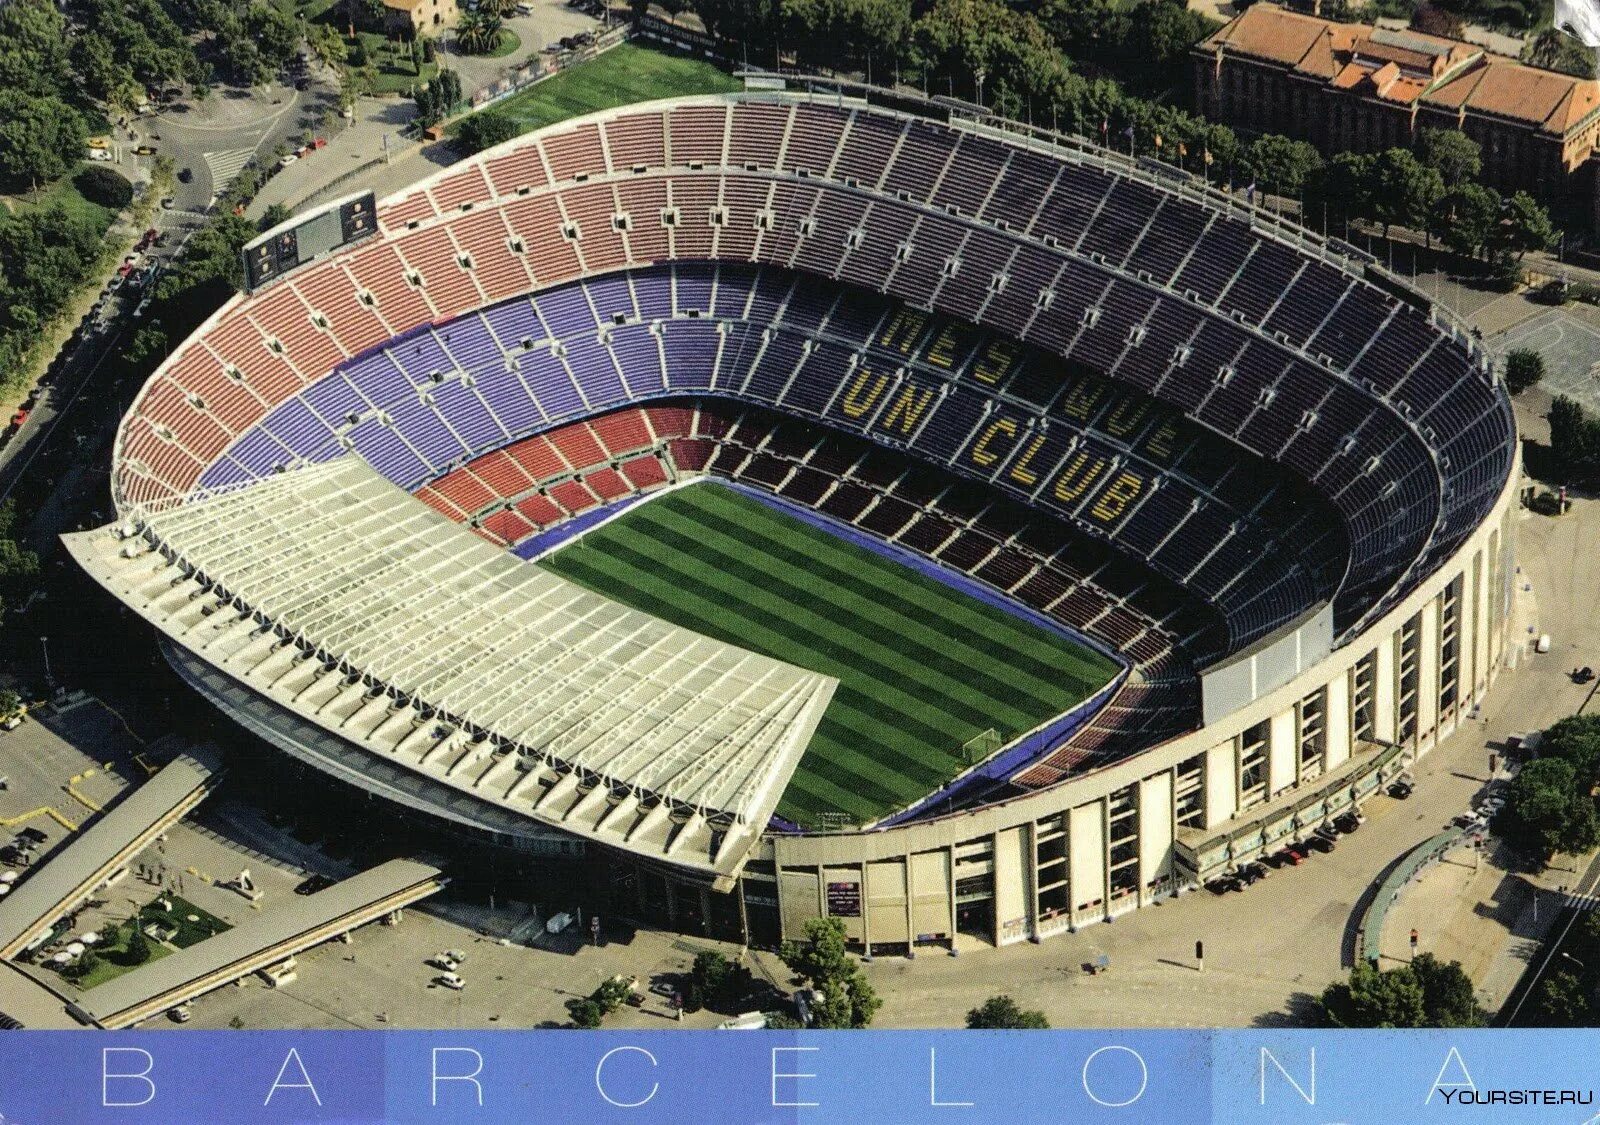 Стадион Camp nou. Барселона Камп ноу. Стадион Барселоны. Камп ноу 1957.